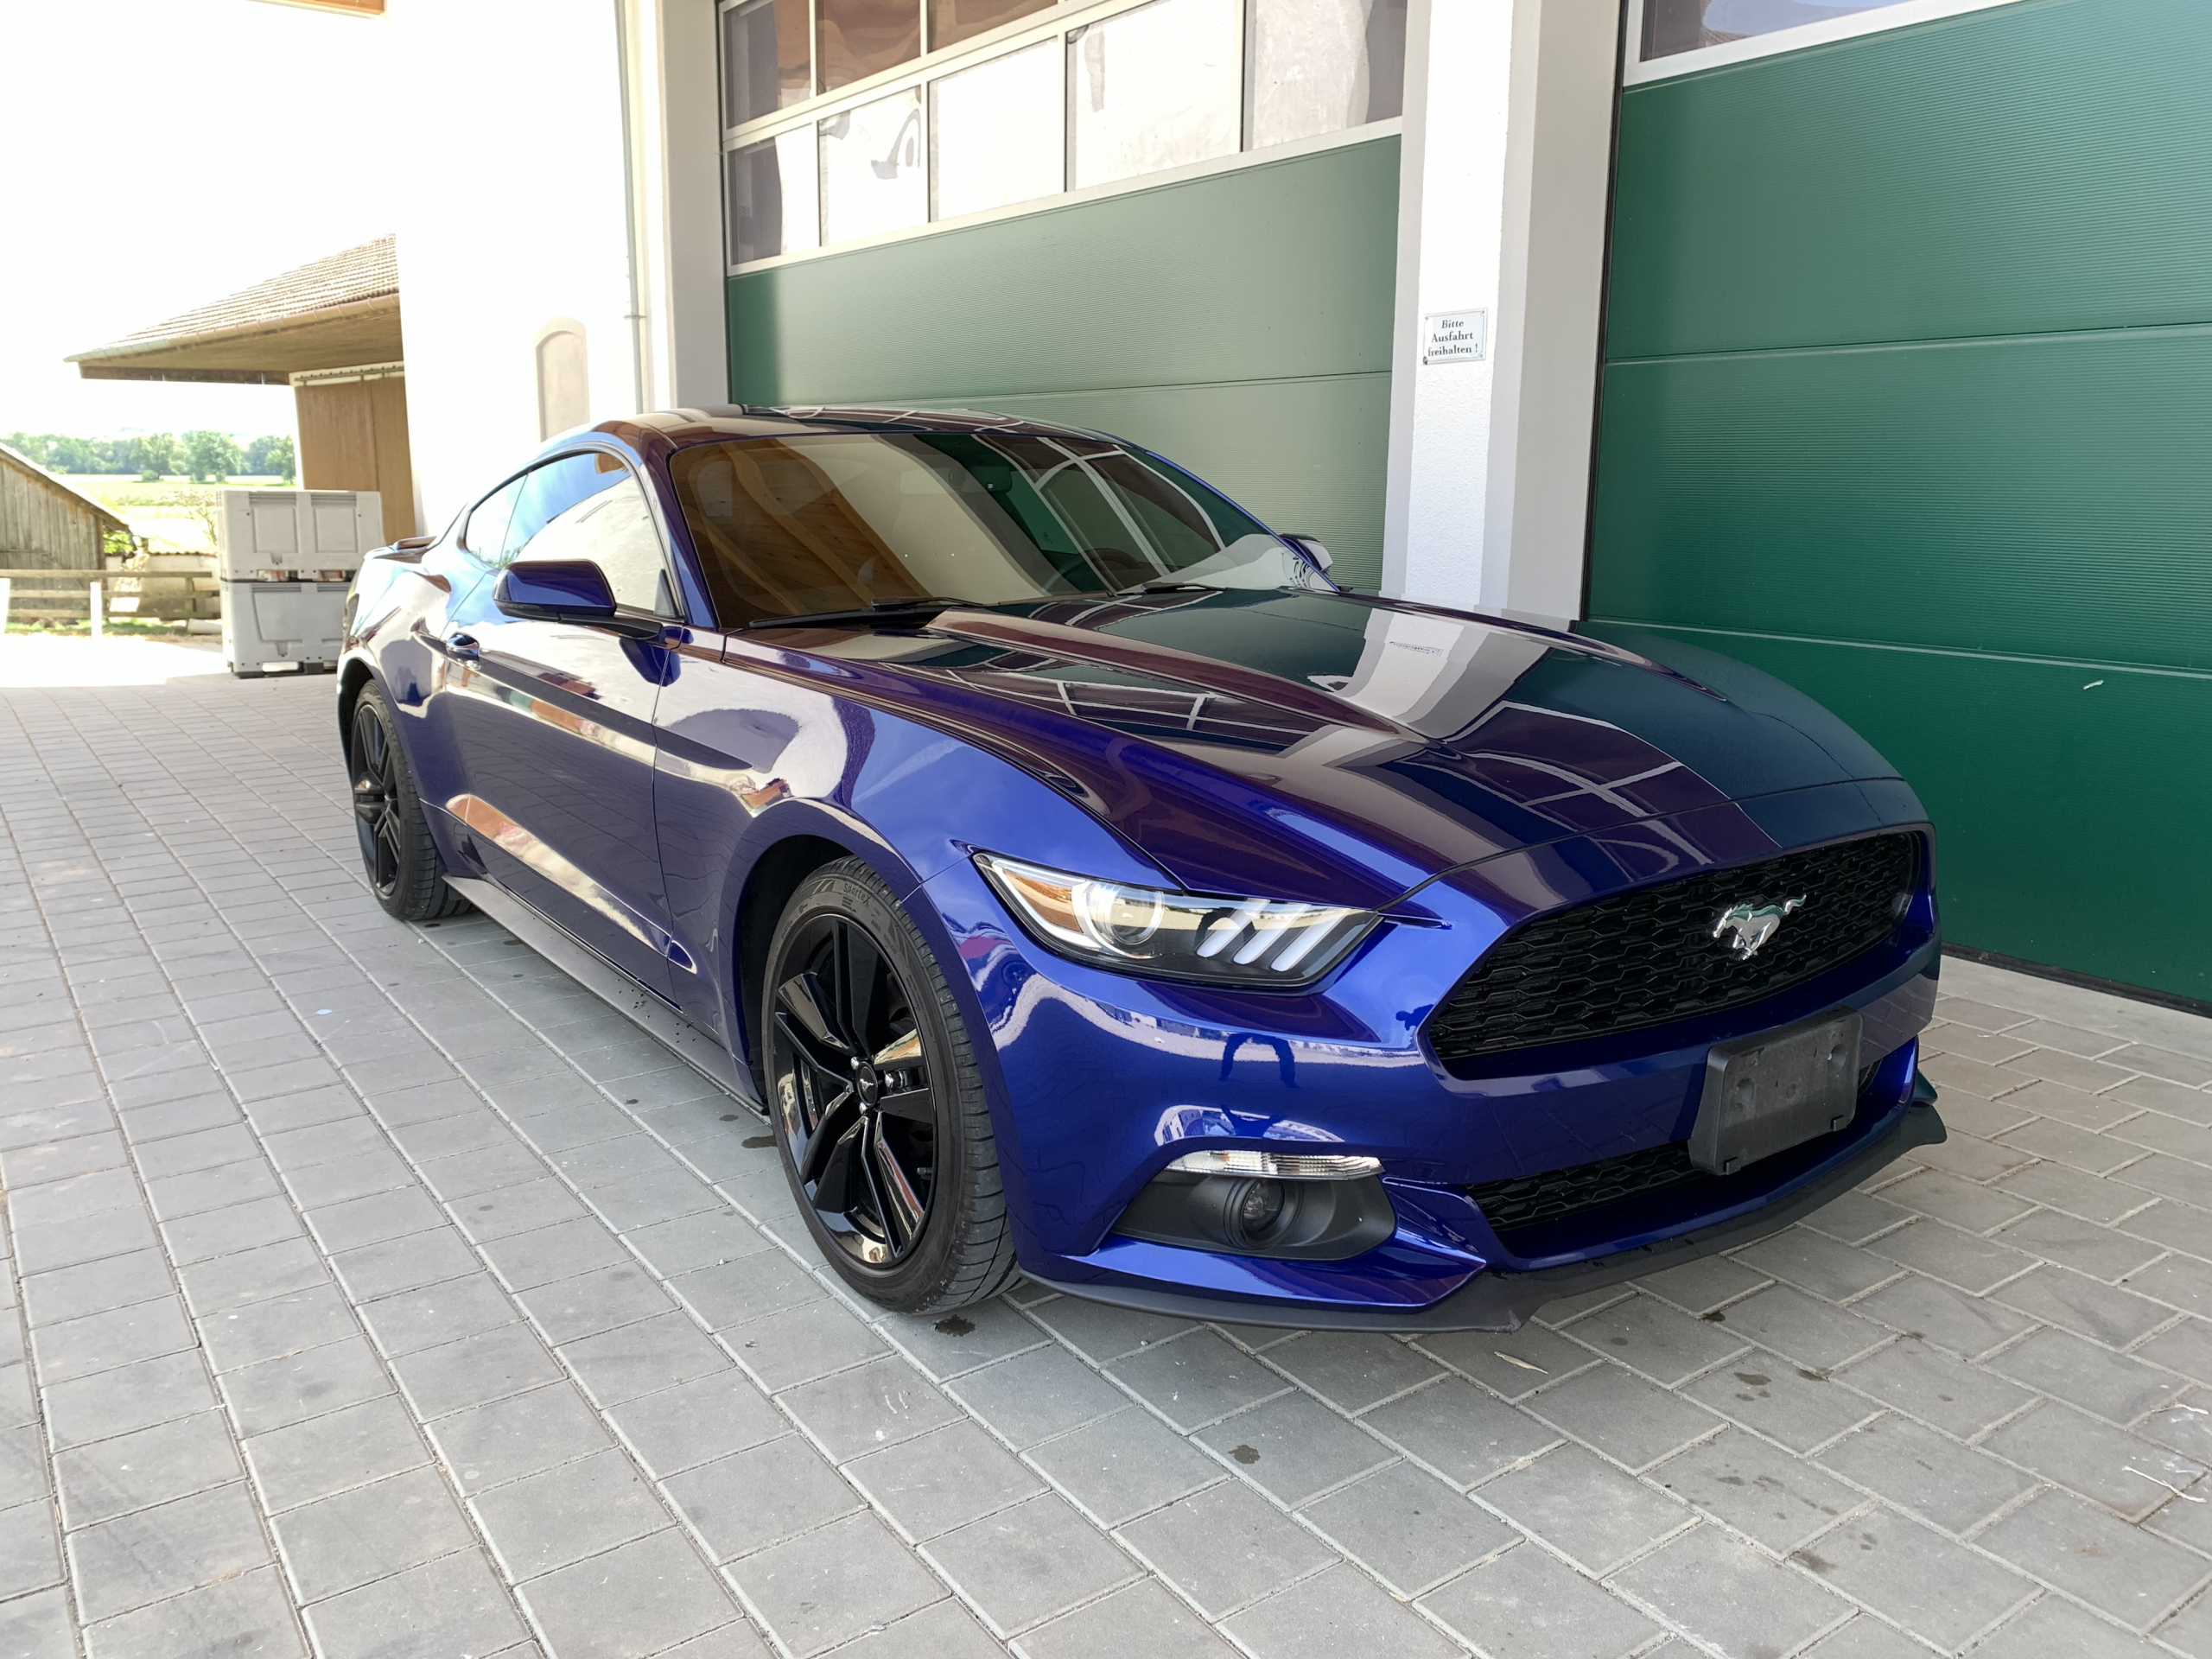 2016 Ford Mustang zu verkaufen Osterreich